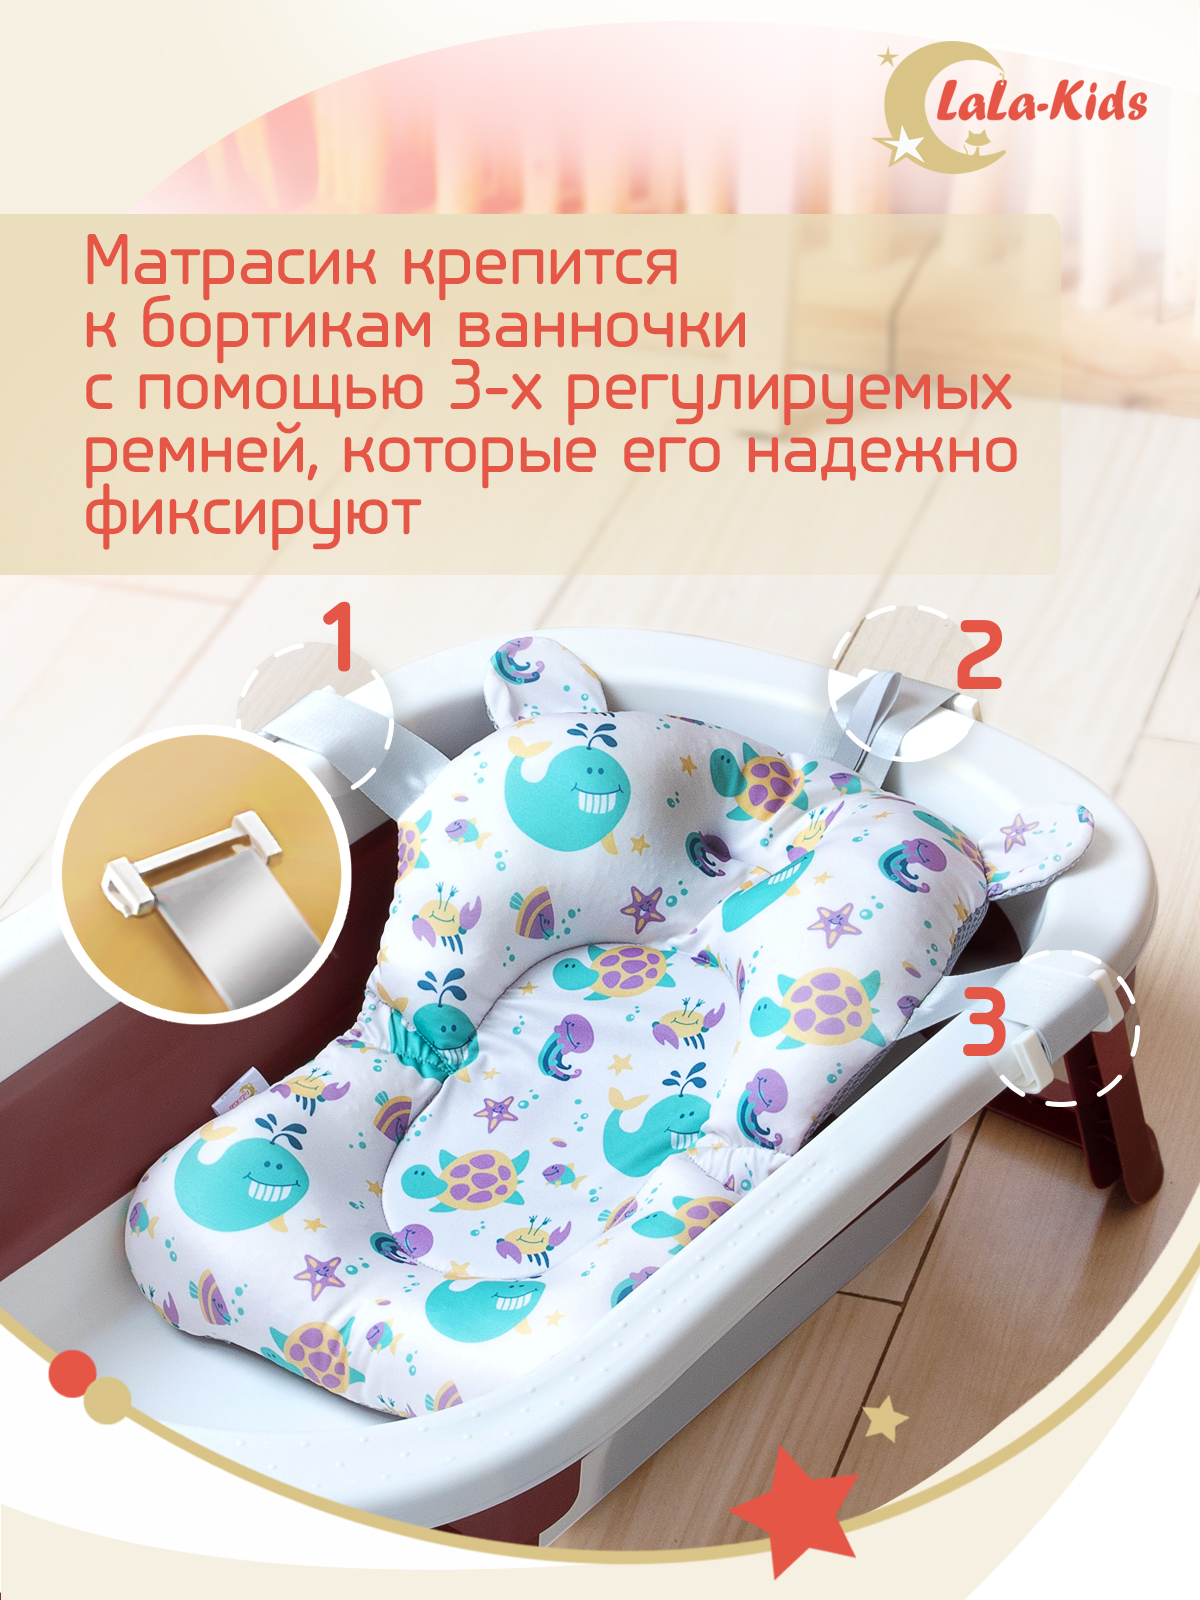 Детская ванночка с термометром LaLa-Kids складная с матрасиком для купания новорожденных - фото 16